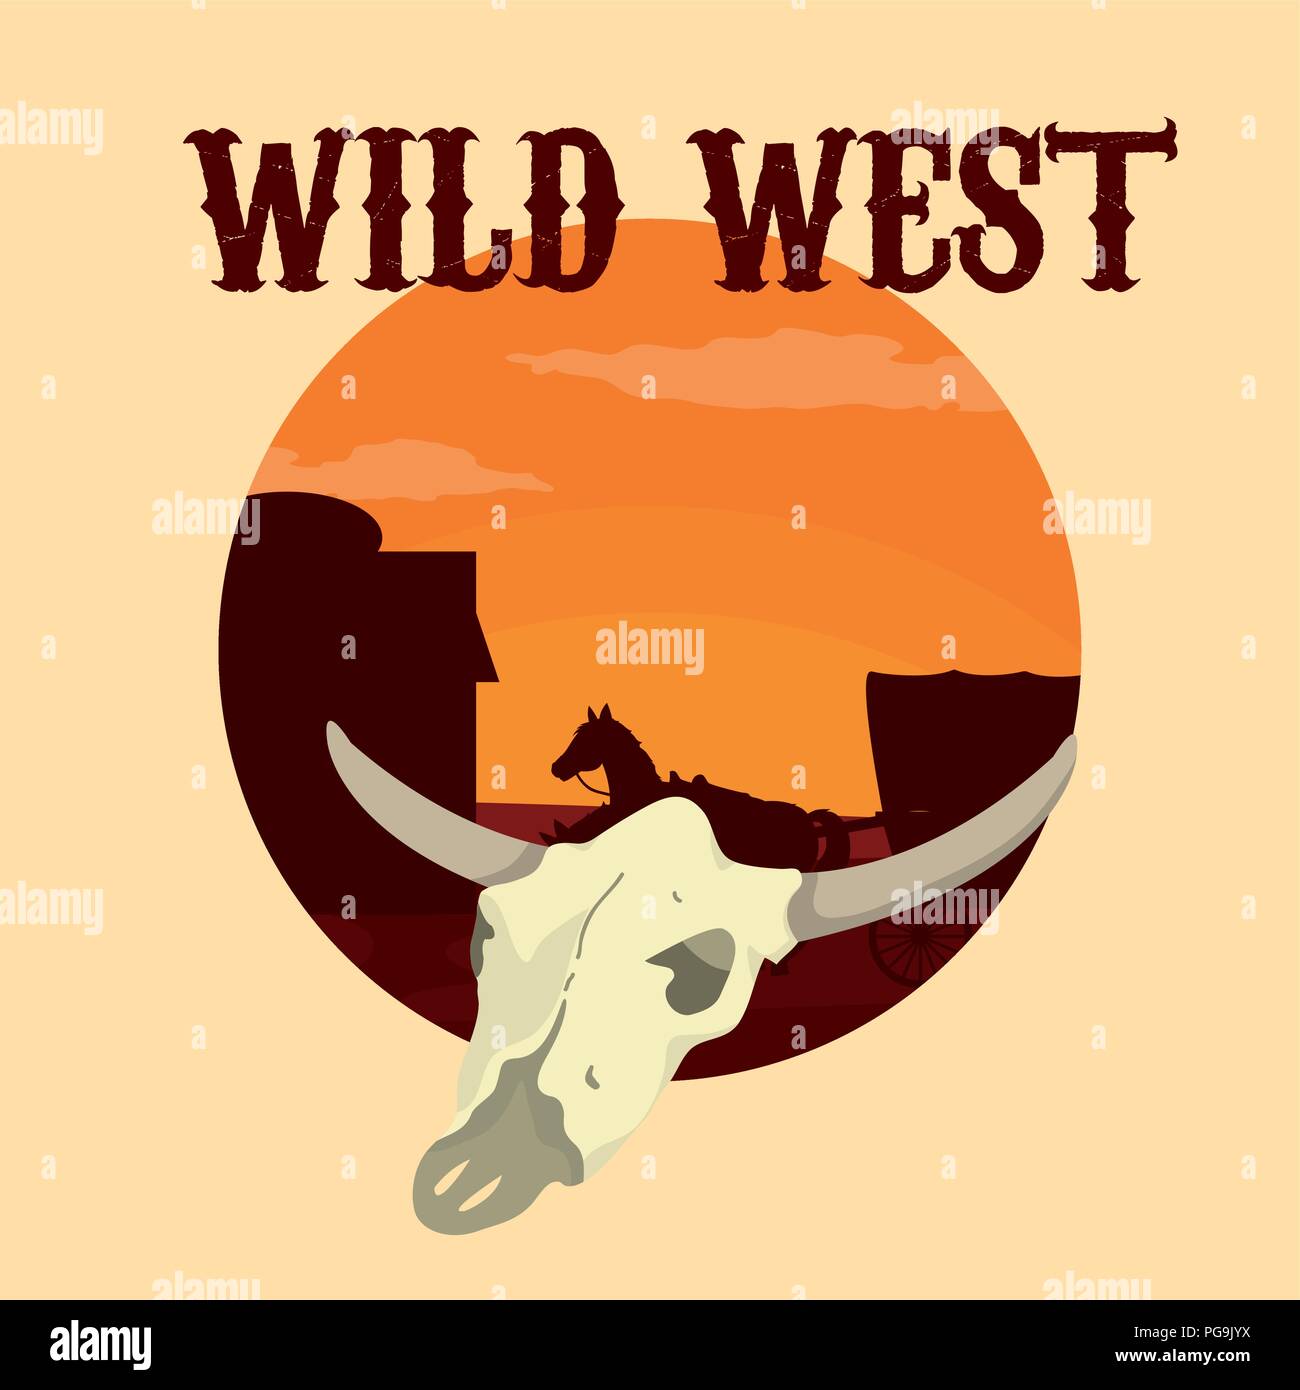 Wild west concept Stock Vector